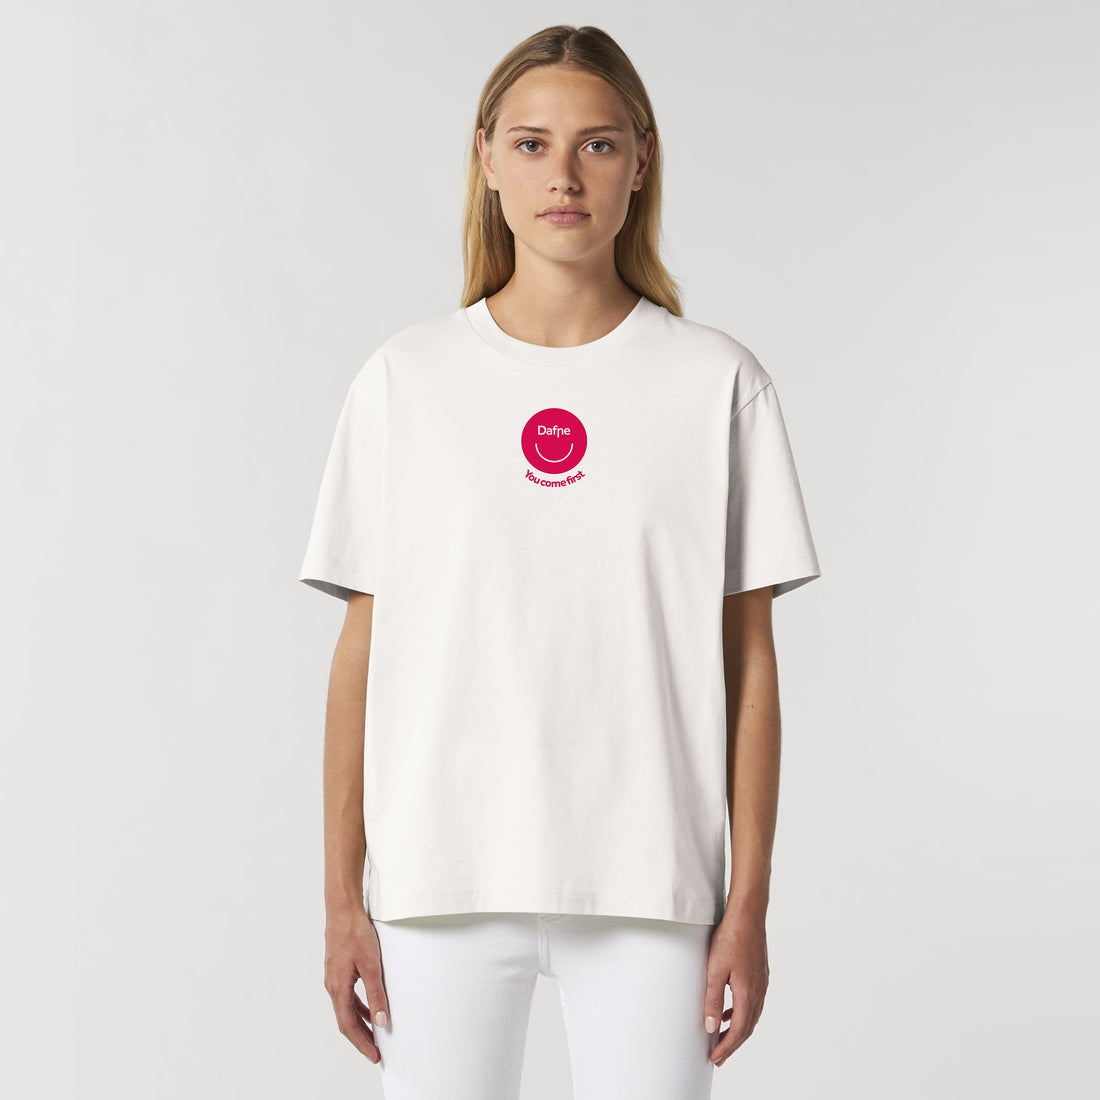 T-shirt unisex relaxed Dafne 100% cotone organico "Orgasmi Futuri"